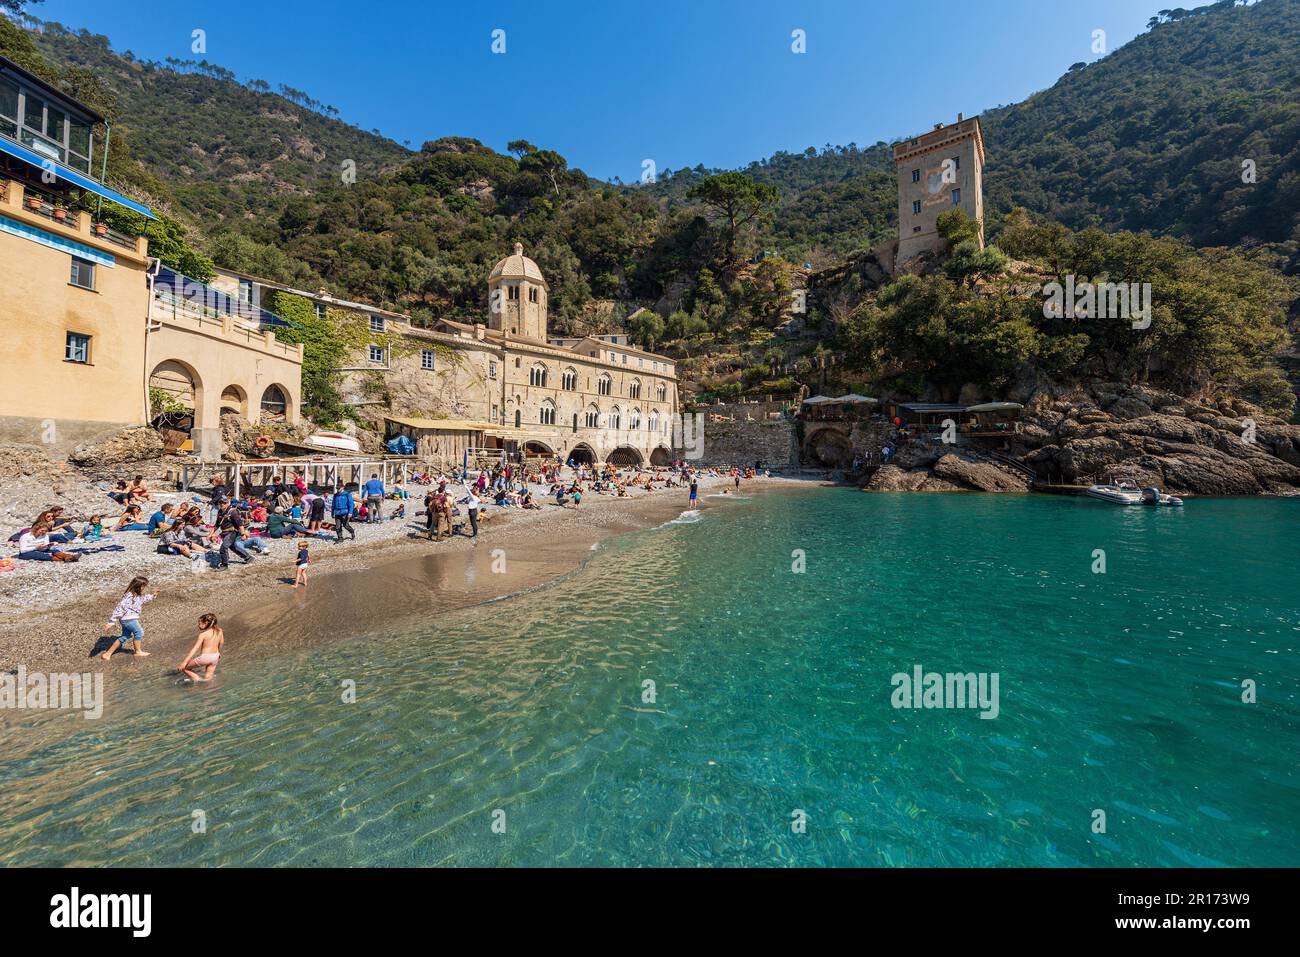 Antica Abbazia di San Fruttuoso, X-XI secolo. Spiaggia affollata di turisti vicino a Portofino e Camogli, provincia di Genova (Genova), Liguria, Italia, Europa. Foto Stock